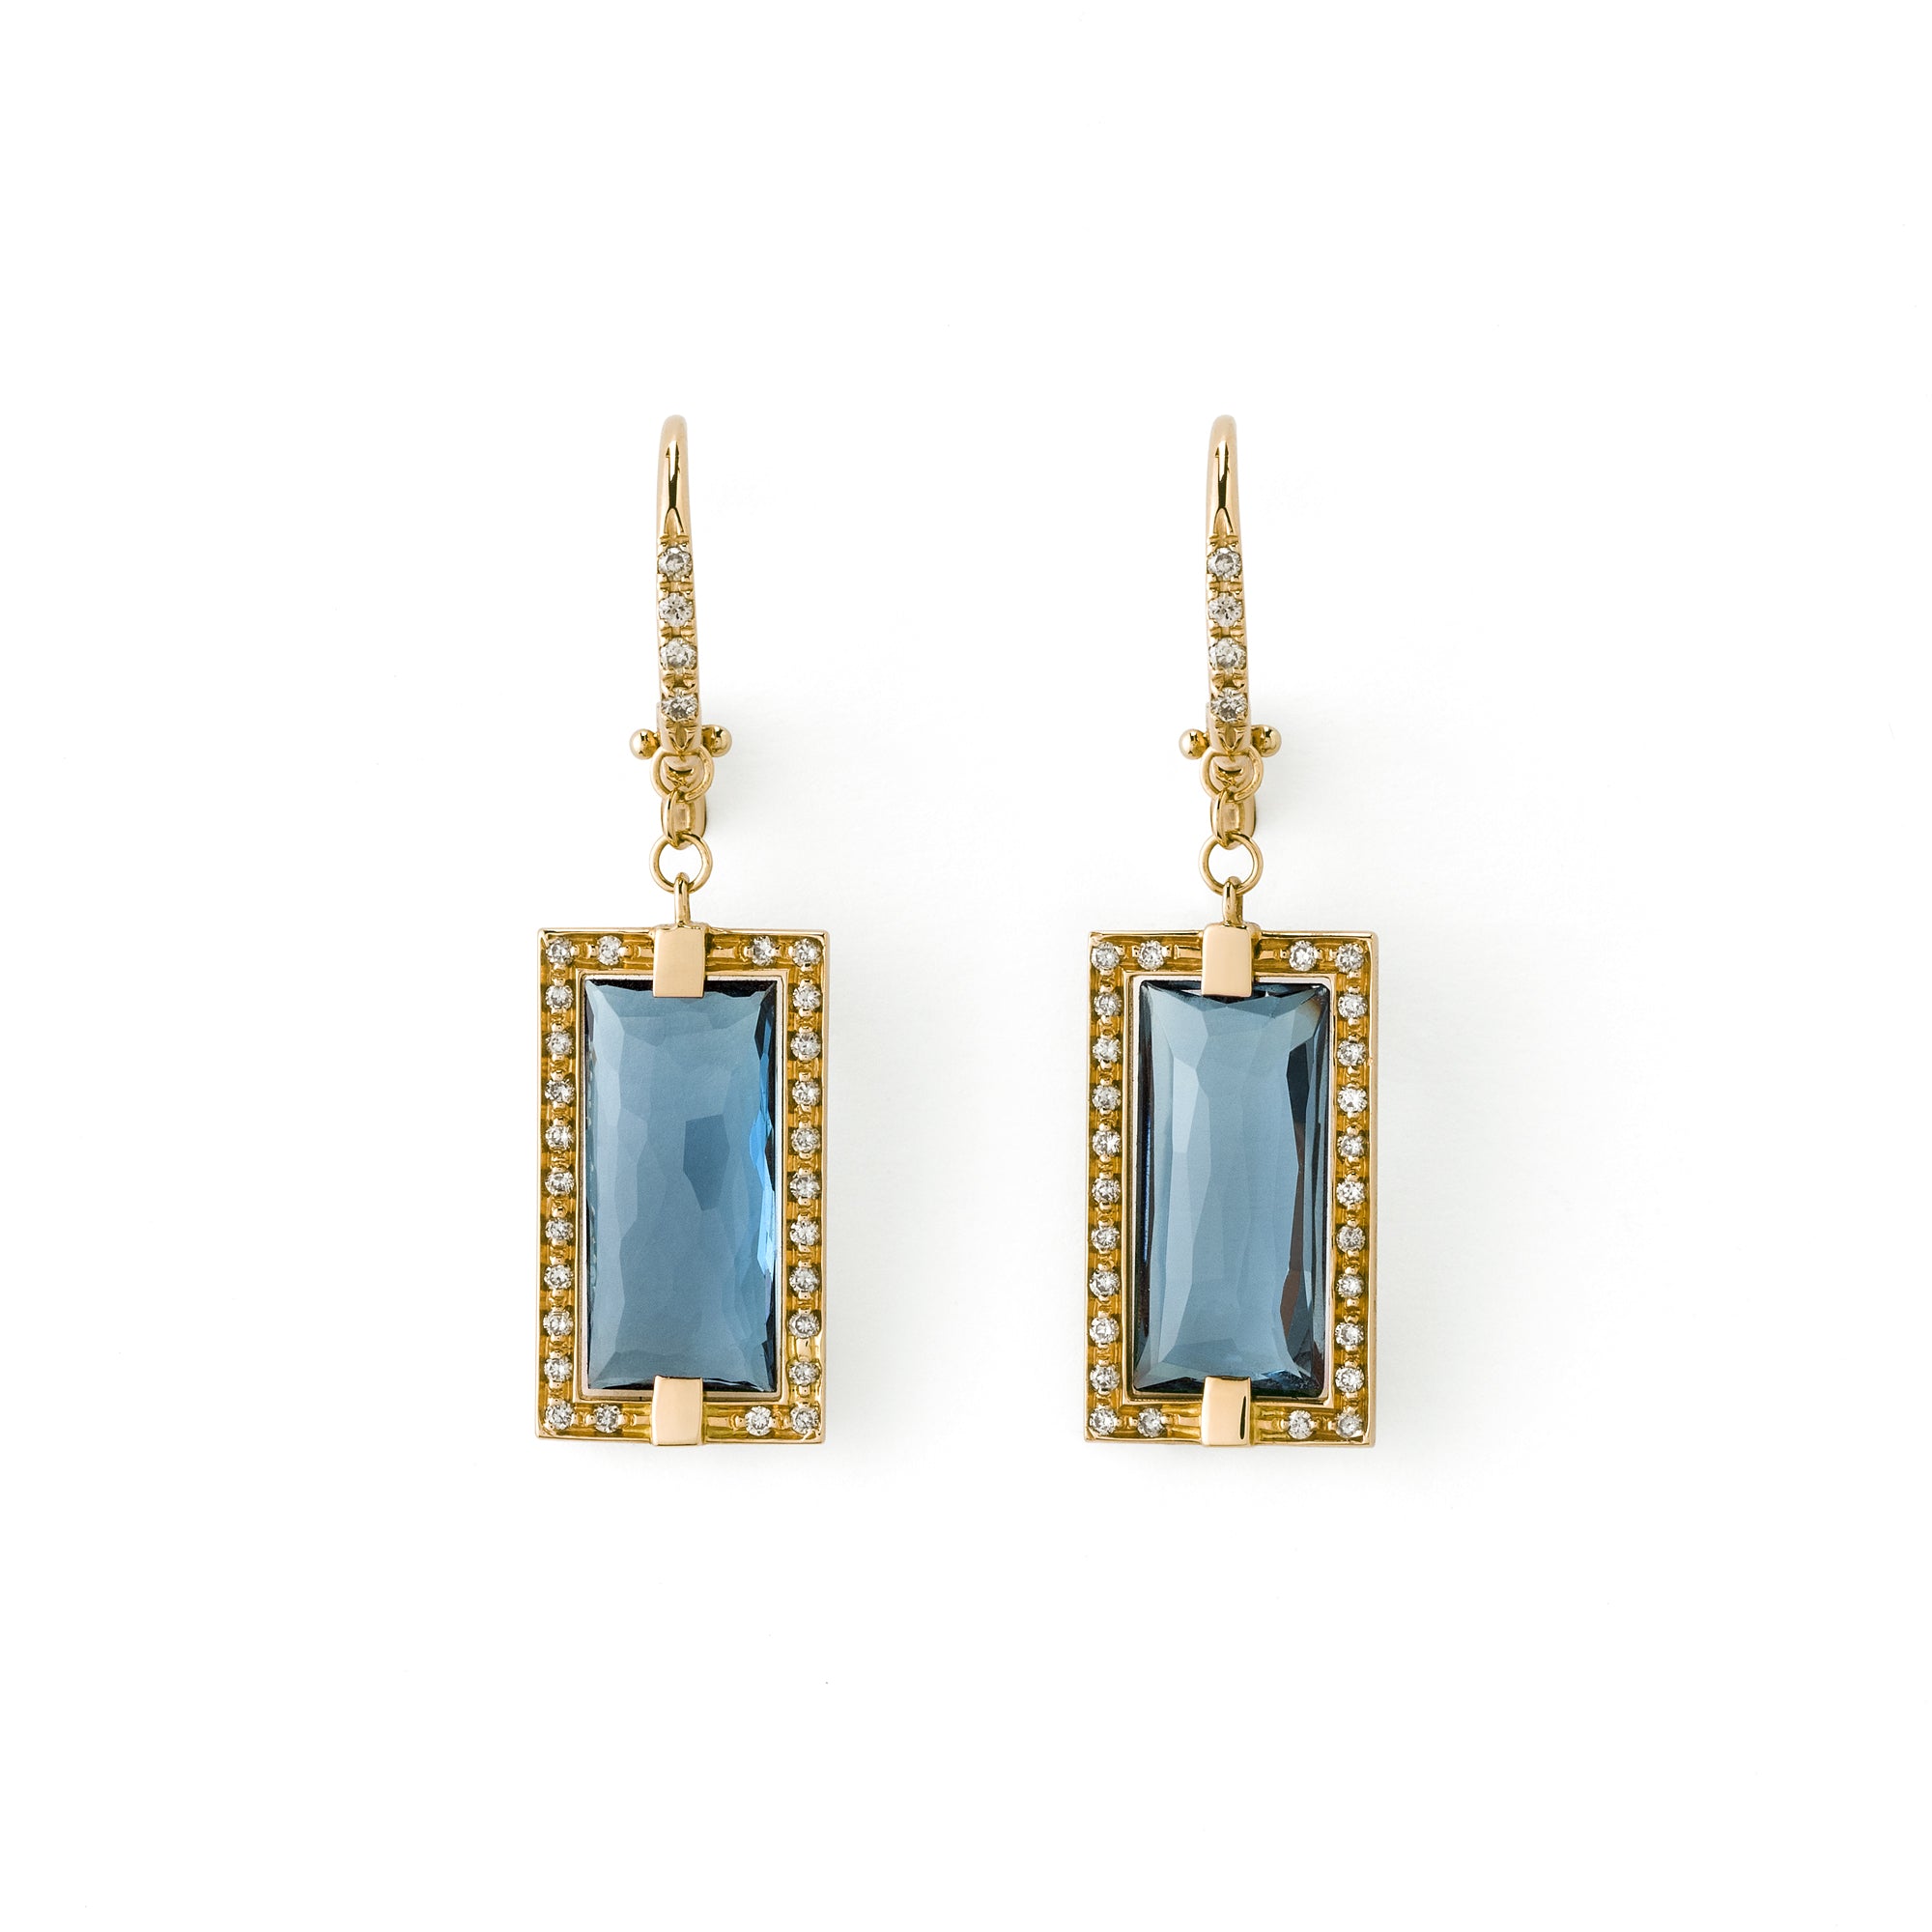 Profondo Blu yellow gold earrings